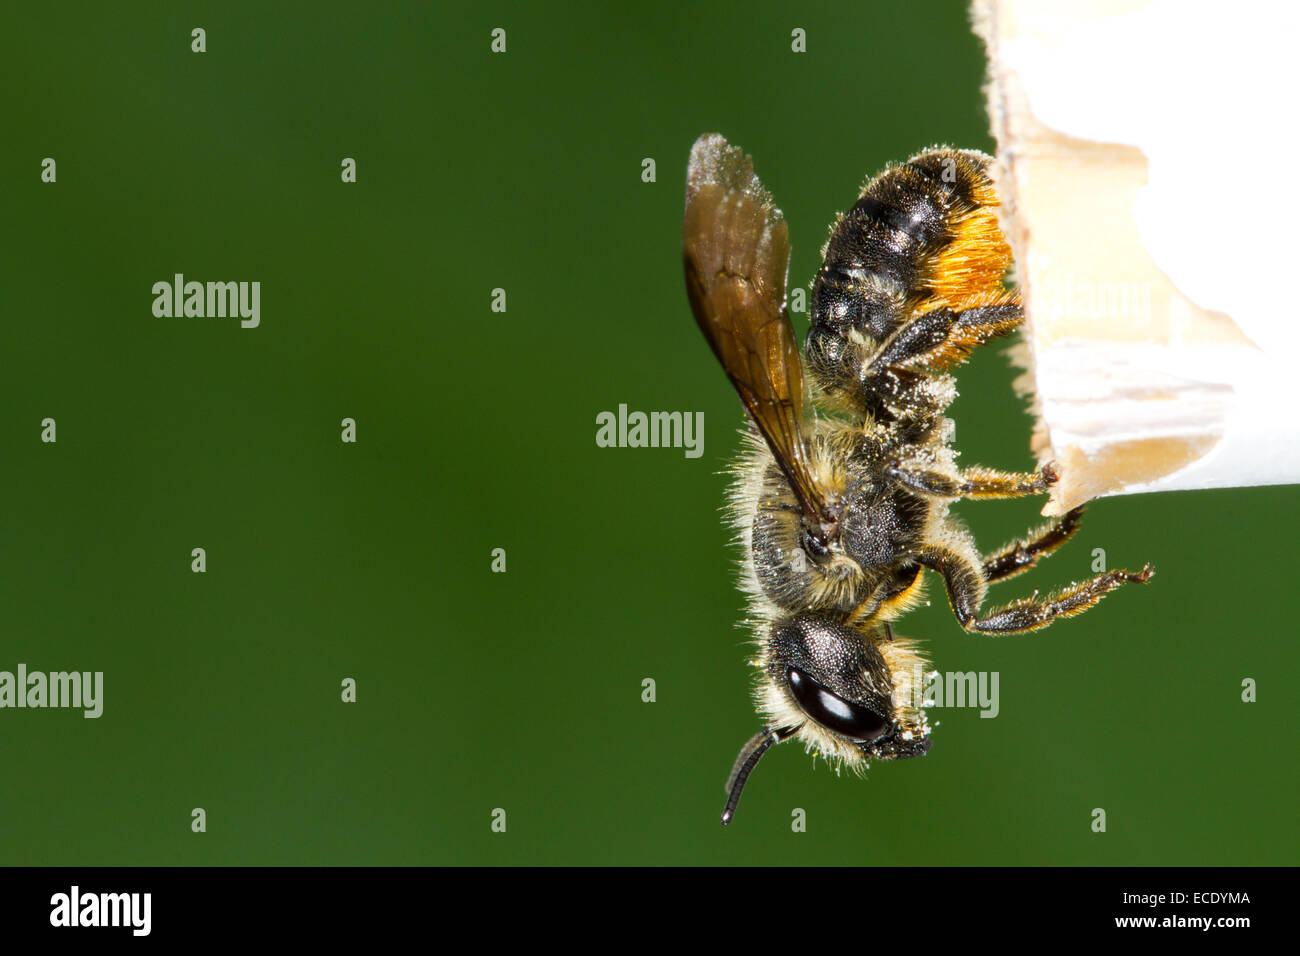 Évent Orange Mason-bee (Osmia leaiana) femelle adulte de quitter son nid dans un jardin de la canne à sucre. Powys, Pays de Galles. Juillet. Banque D'Images